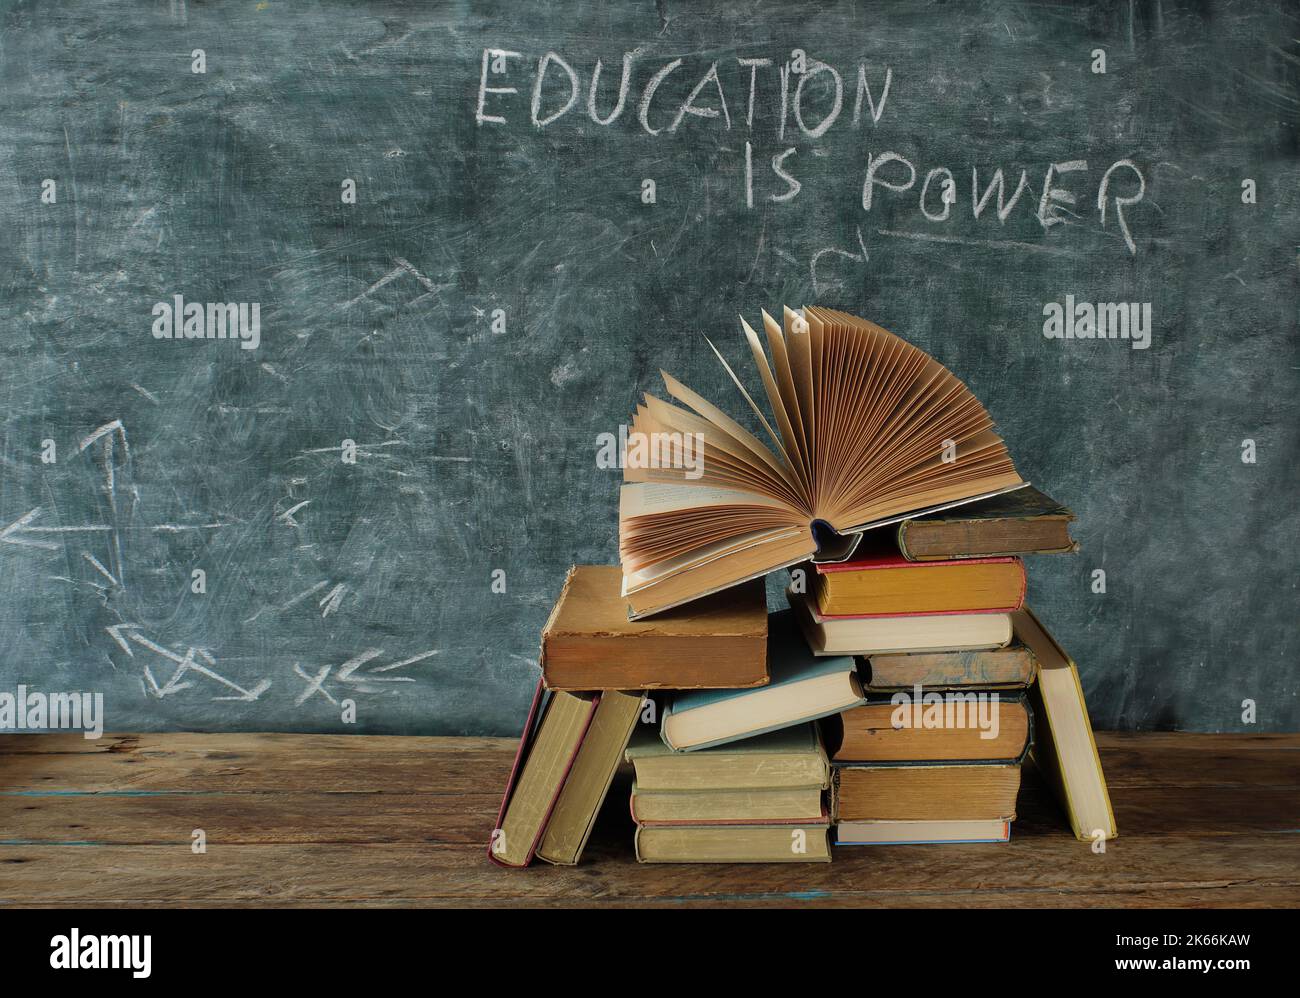 Offenes Buch, Hardback Bücher mit Bildung ist Macht Slogan auf Tafel, Bildung, Lernen und Lesen Konzept. Freier Speicherplatz für Kopien Stockfoto